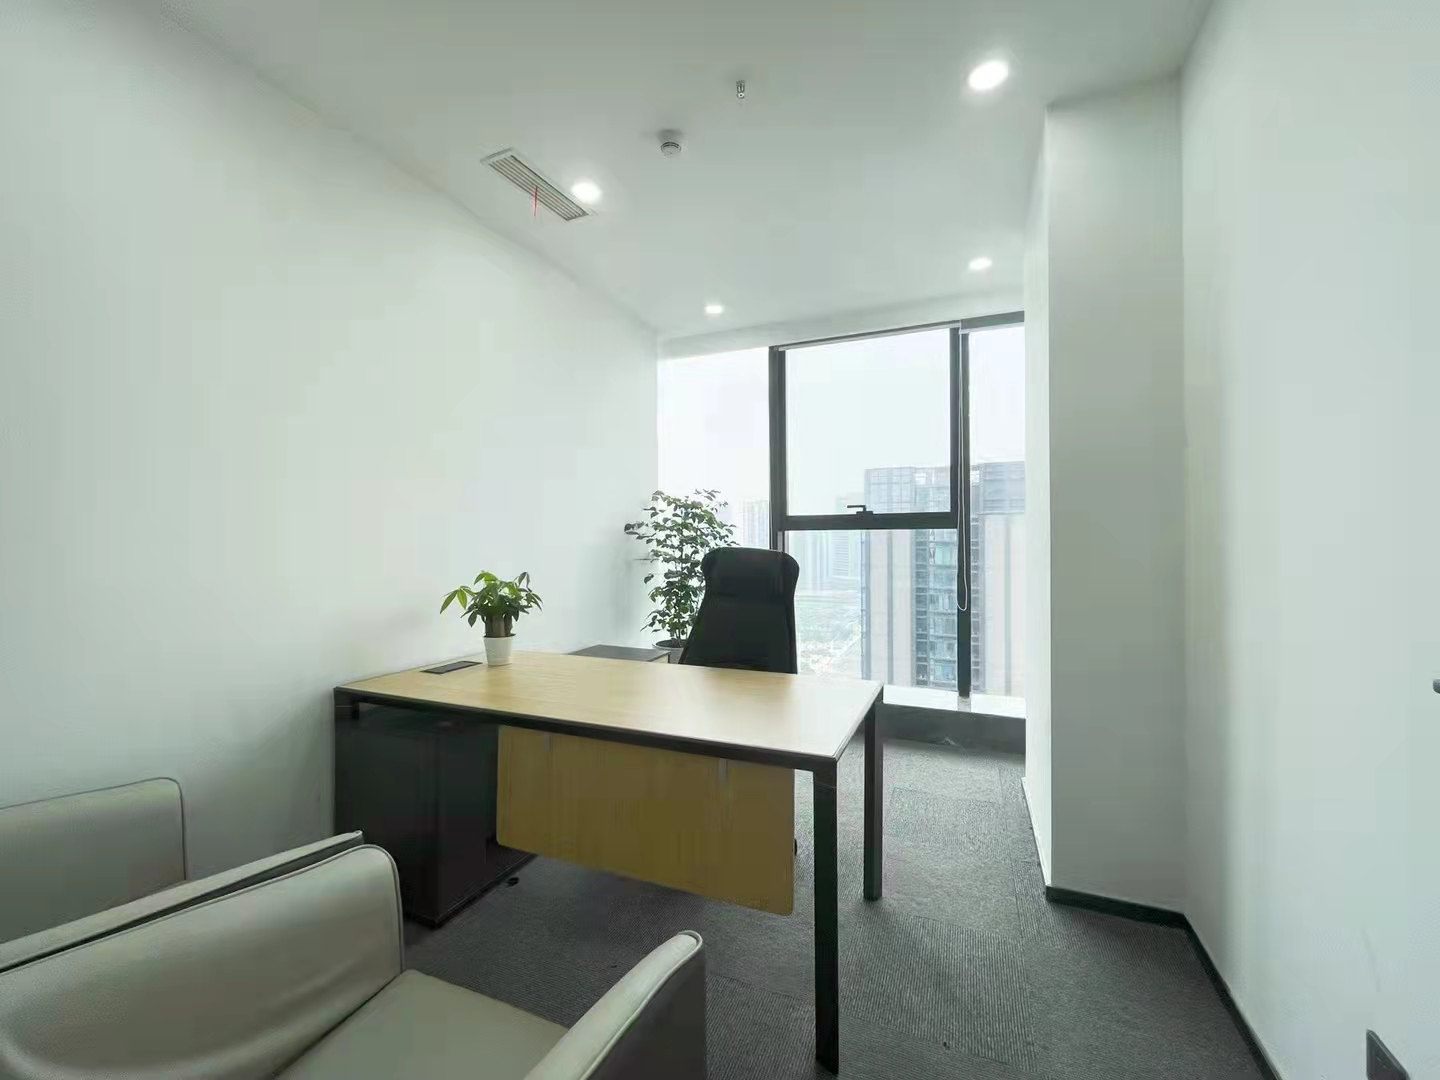 全新装修 成华区东郊记忆地铁口招商中央华城5隔间32工位精装办公室 带家具